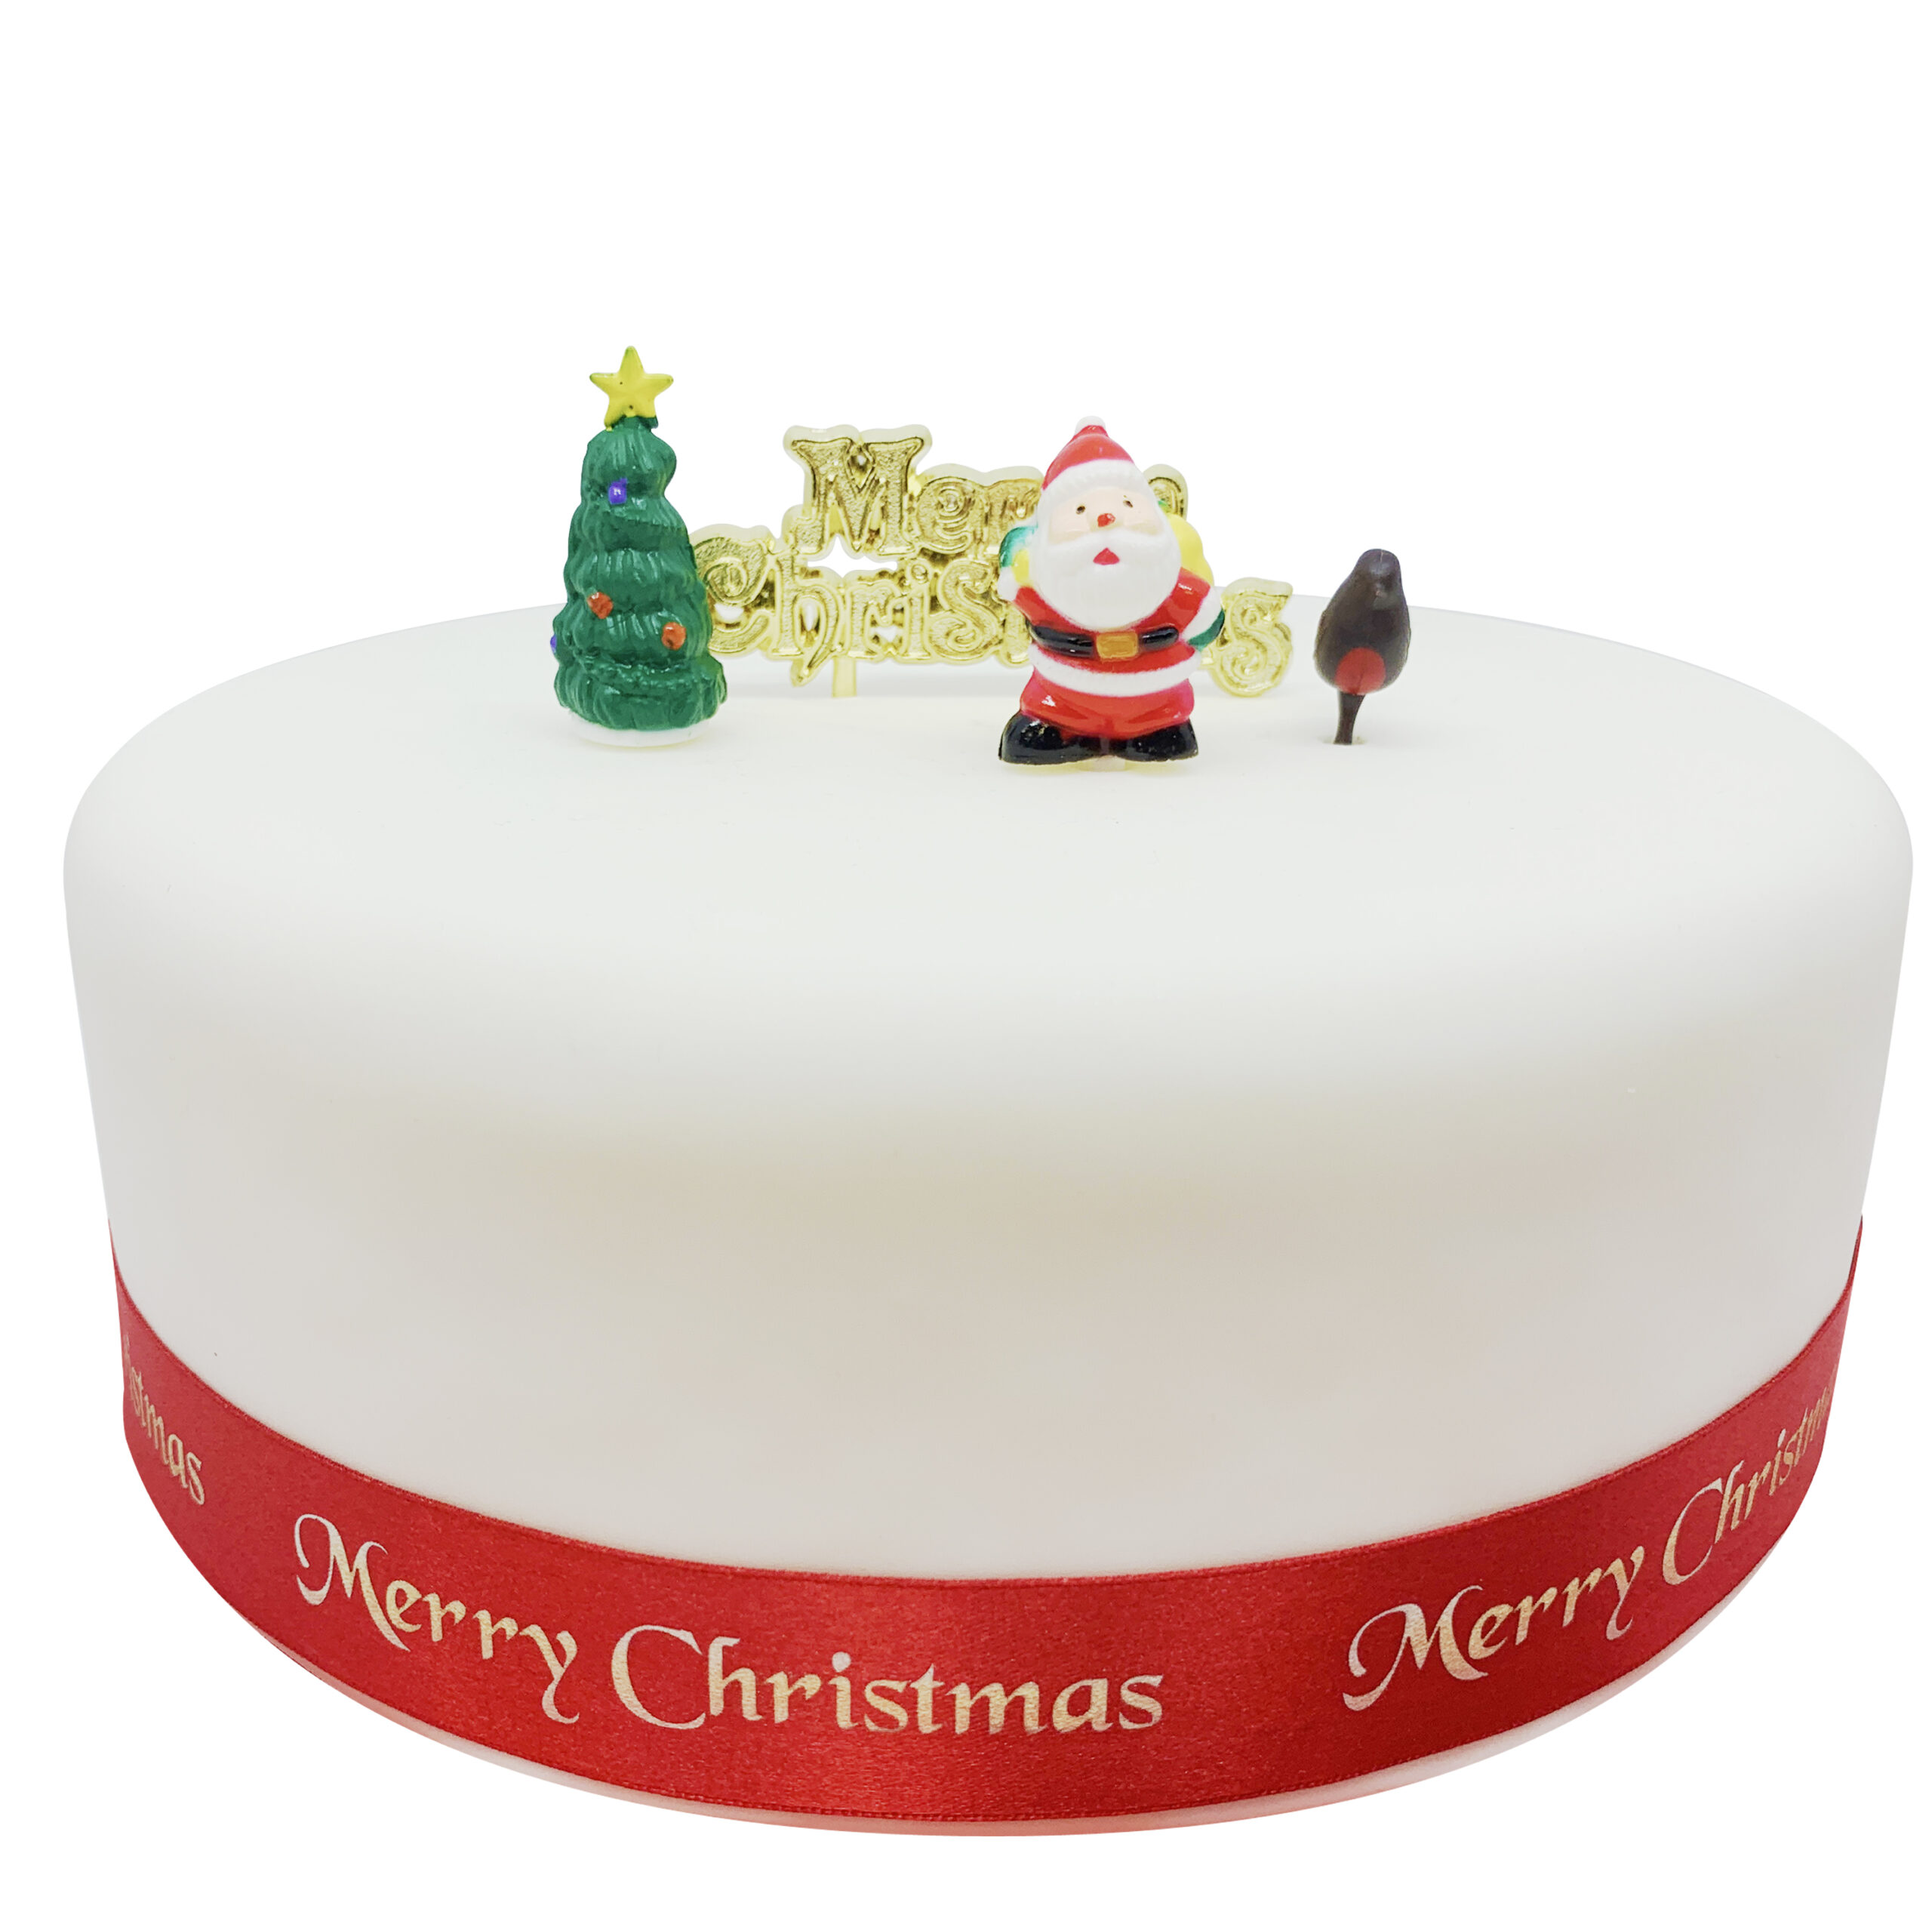 Santa Christmas Cake Kit | Country Kitchen SweetArt